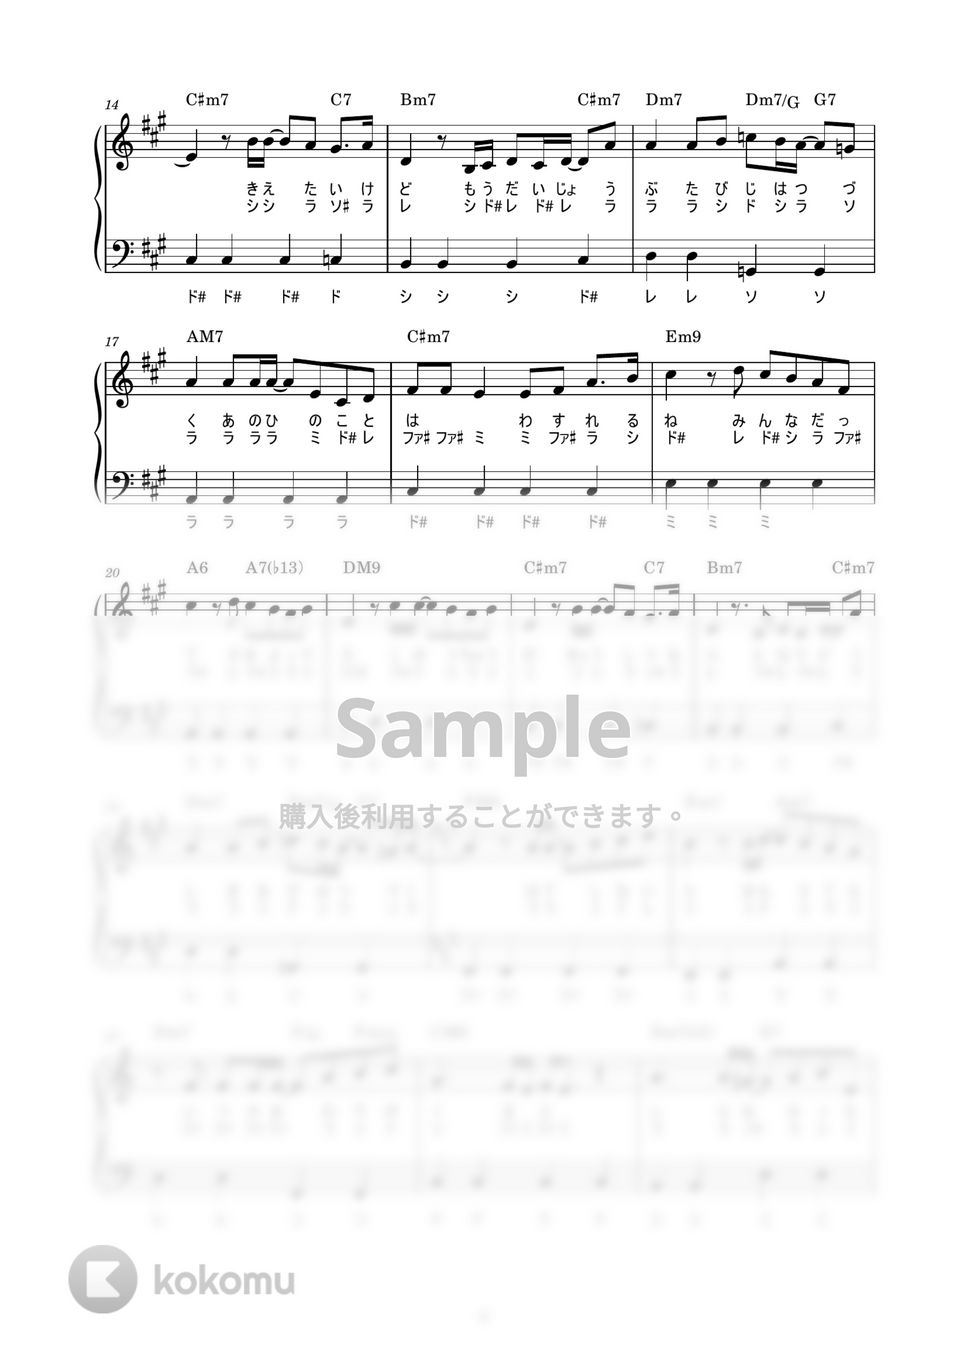 藤井風 - 旅路 (かんたん / 歌詞付き / ドレミ付き / 初心者) by piano.tokyo